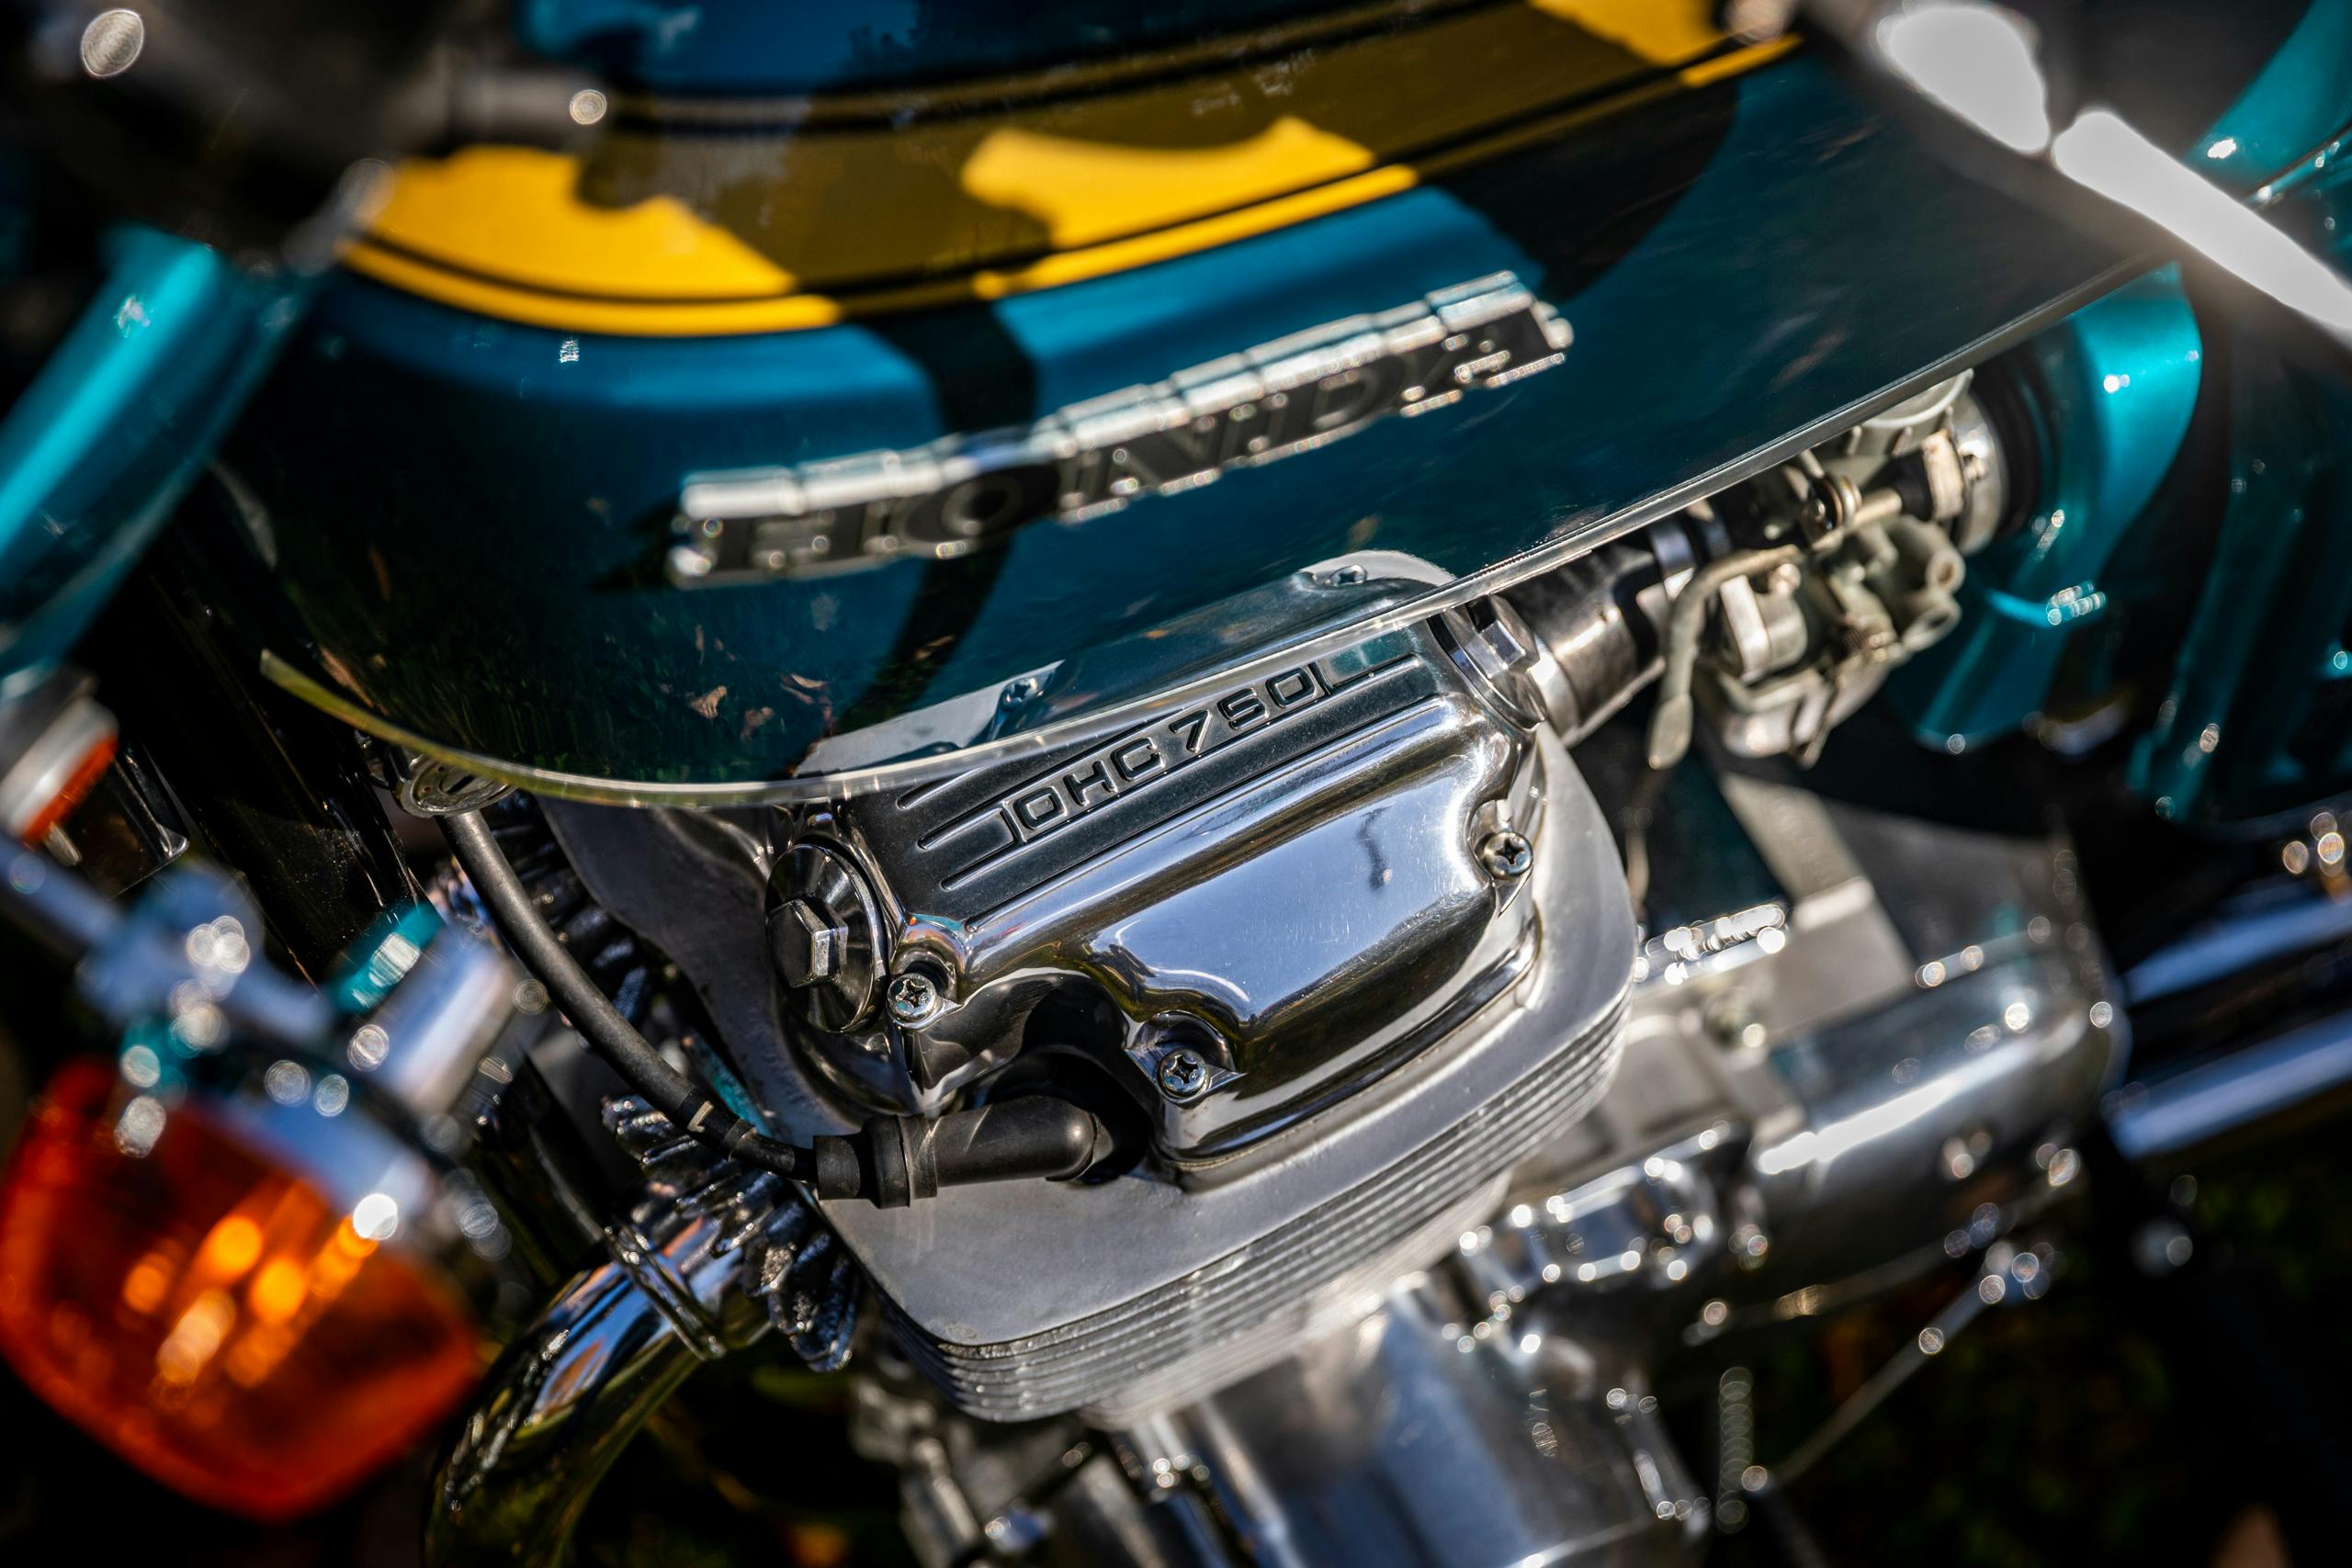 Honda CB750 engine detail